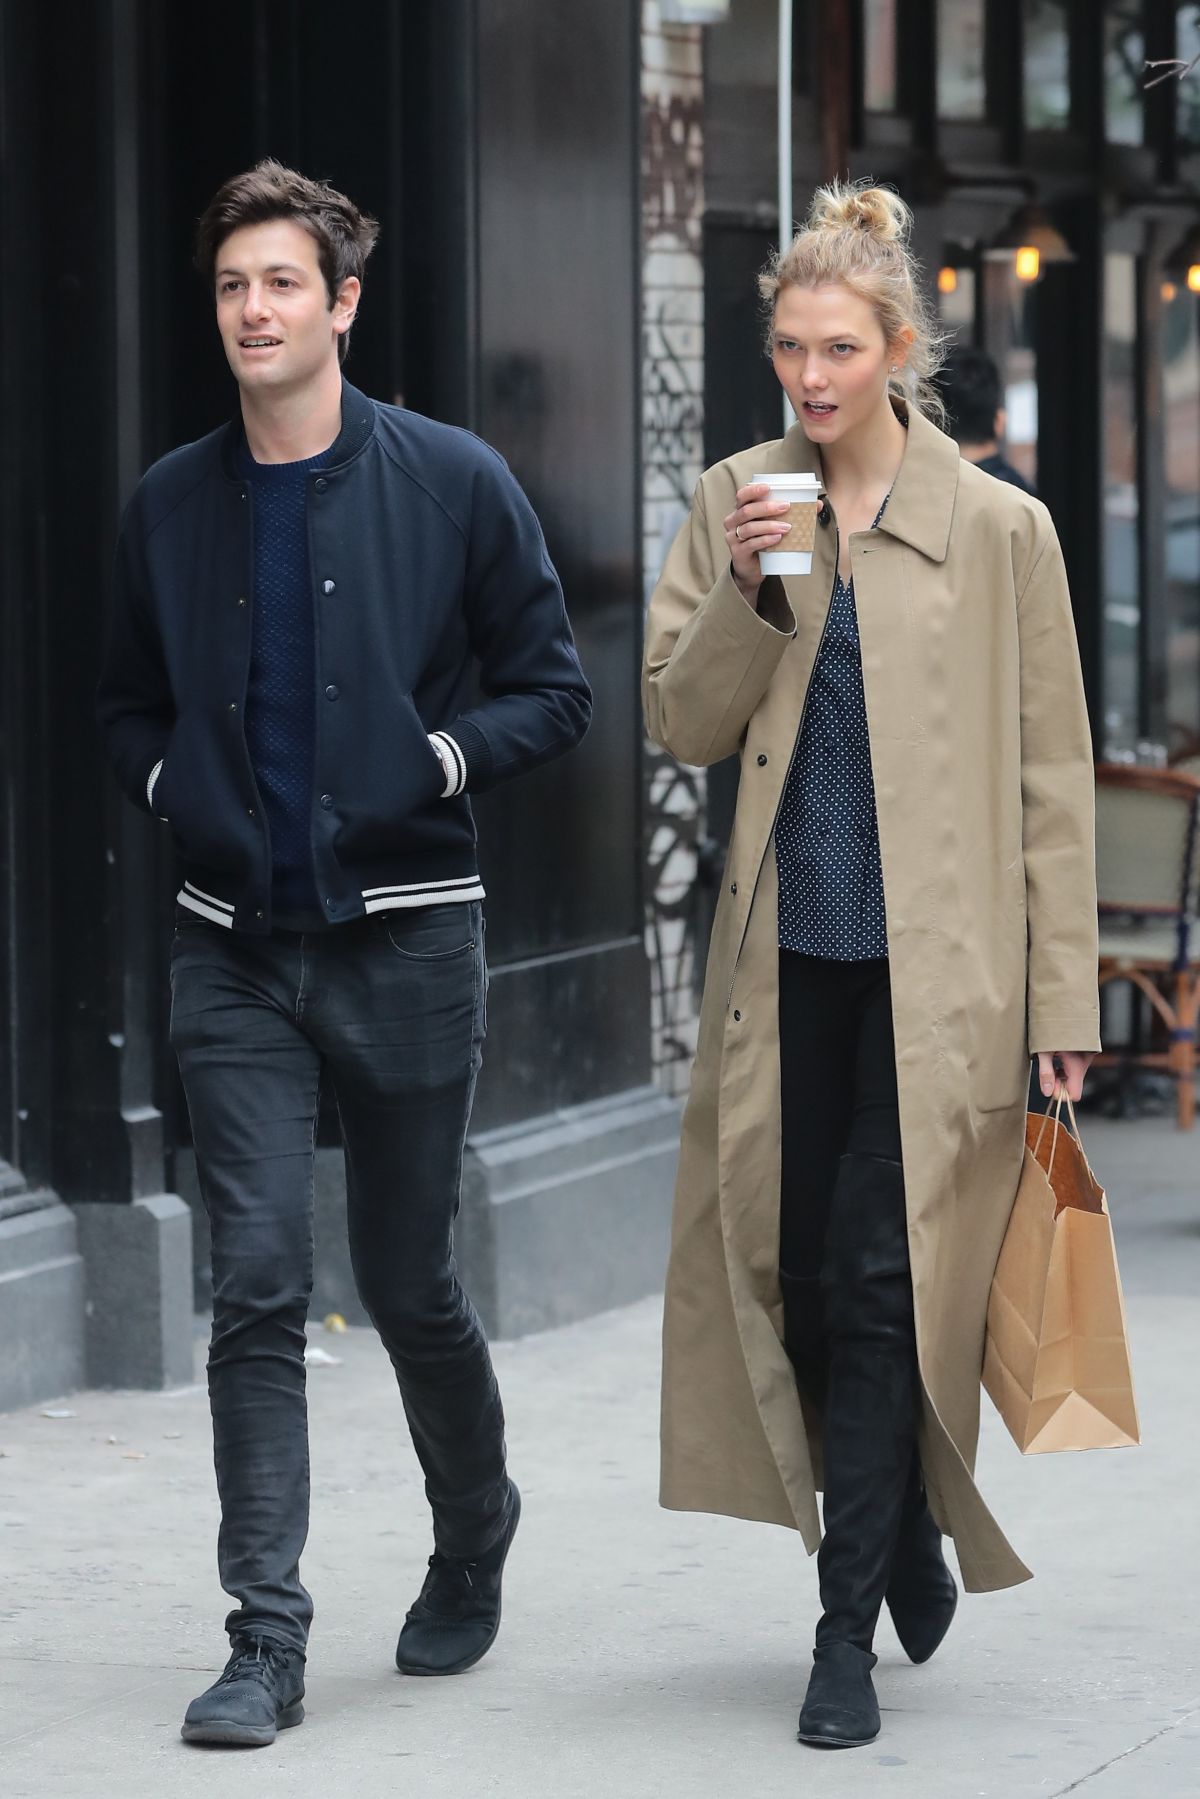 KARLIE KLOSS and Joshua Kushner Out Shopping in New York 03/26/2017 ...